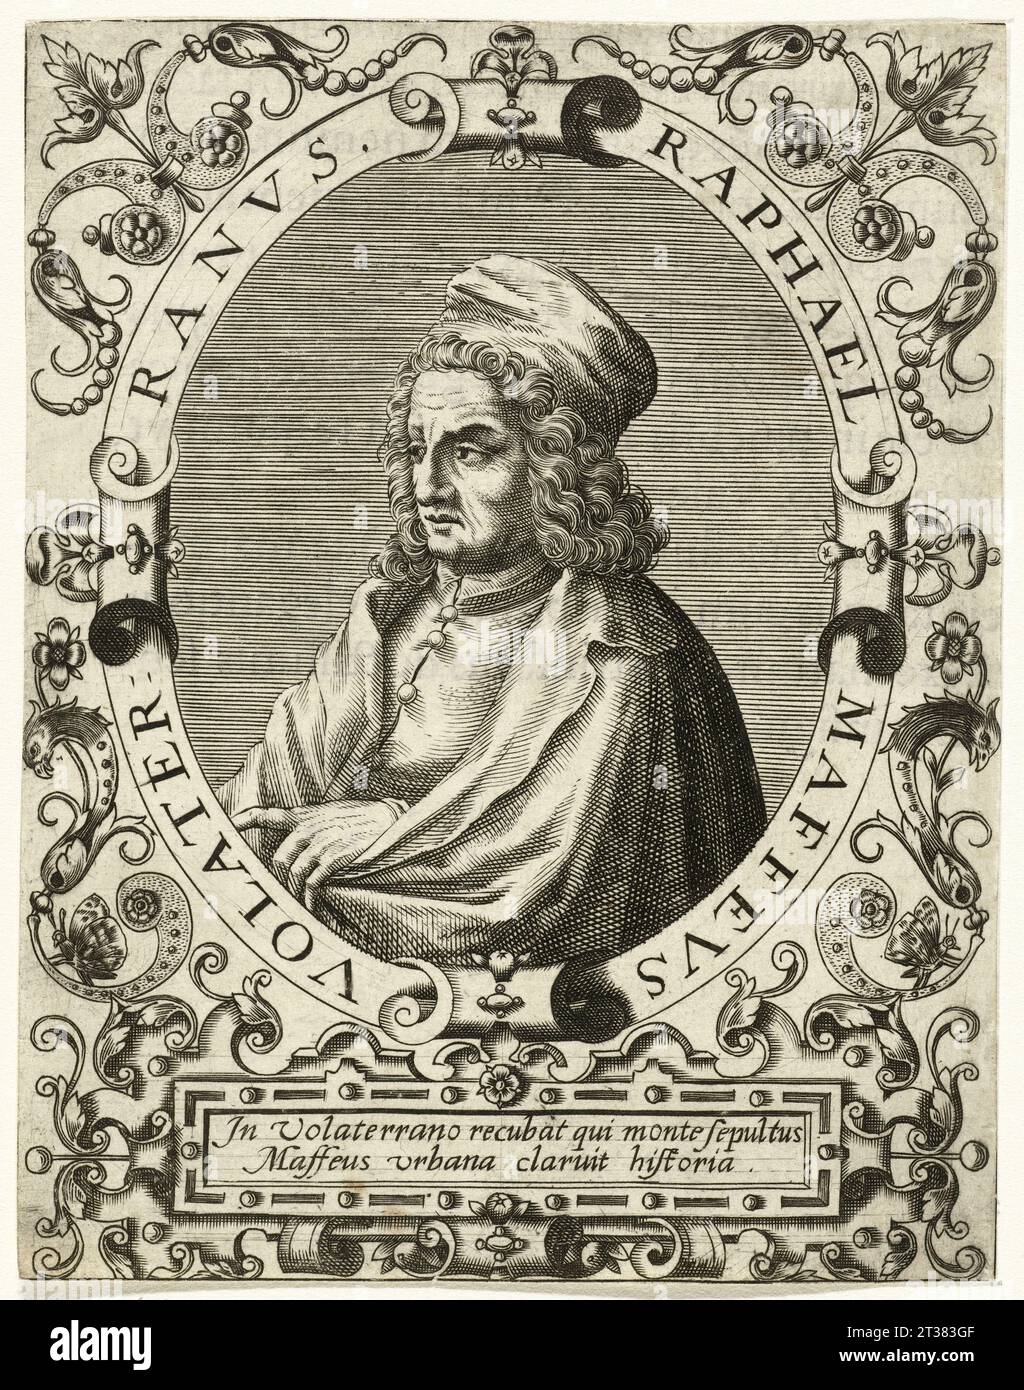 1490 ca, ITALIA : lo scrittore , teologo , filosofo e storico italiano RAFFAELE MAFFEI ( 1451 - 1522 ) , nominato Raffaello di Volterra . Ritratto inciso da THEODOR de BRY , dopo JEAN JACQUES BOISSARD . - POETI italiani - '300 - '300 - RINASCIMENTO - TEOLOGO - TEOLOGIA - TEOLOGIA - FILOSOFO - FILOSOFIA - SCRITTORE - LETTERATURA - LETTERATURA - LETTERATO - incisione - ritratto - TOSCANA - profilo - illustrazione - cappello - cappello - RELIGIONE CATTOLICA - RELIGIONE CATTOLICA - Archivio GBB Foto Stock